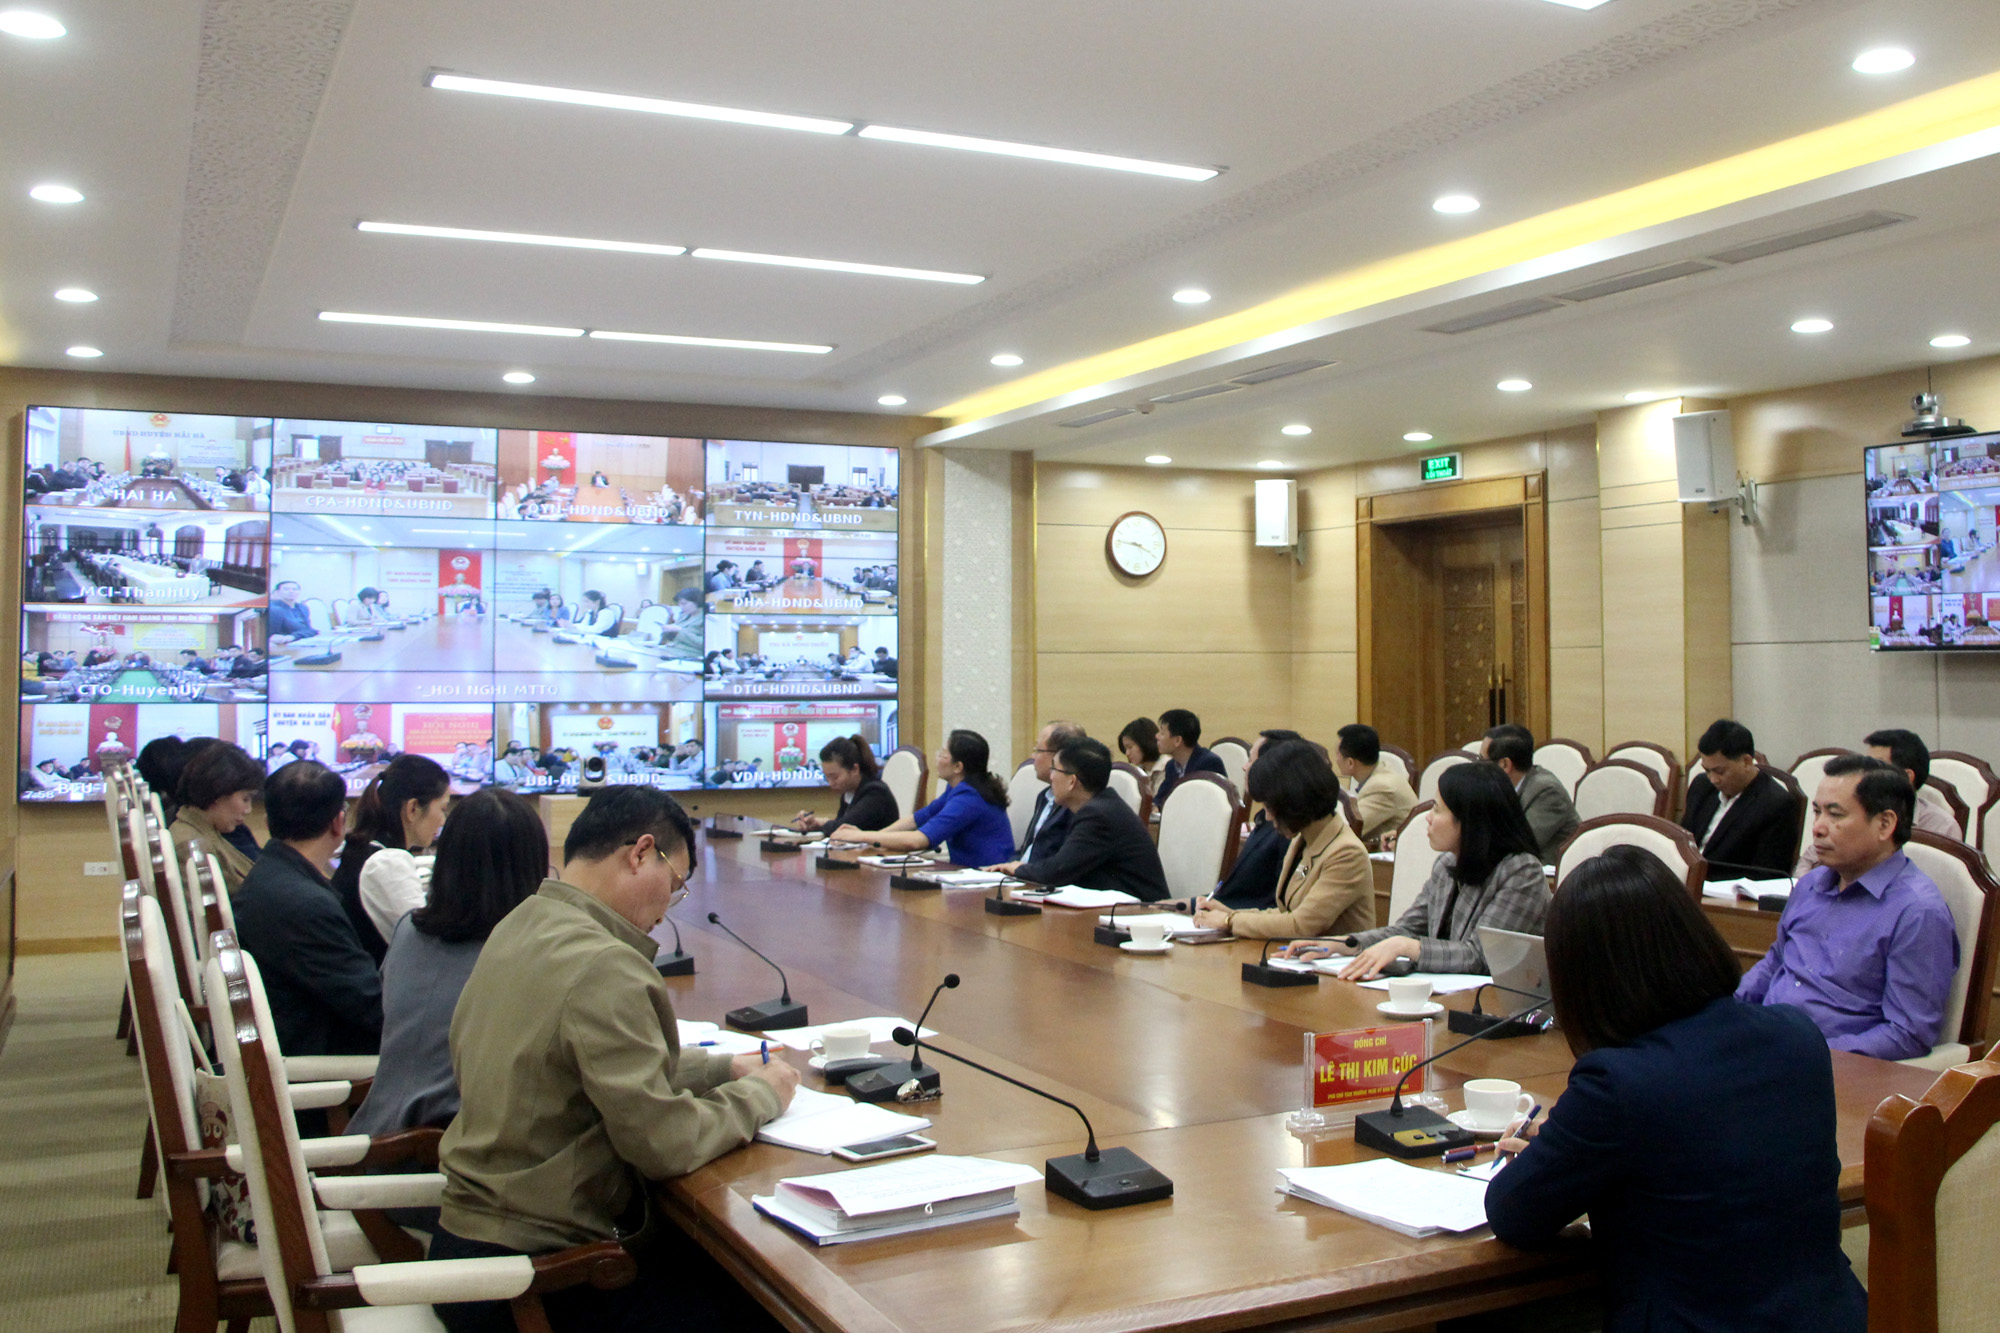 Ủy ban MTTQ Việt Nam tỉnh Quảng Ninh tổ chức hội nghị hướng dẫn tổ chức lấy ý kiến nhận xét và tín nhiệm của cử tri nơi cư trú đối với người ứng cử ĐBQH khóa XV và HĐND các cấp, nhiệm kỳ 2021-2026. Ảnh: Thu Chung. 